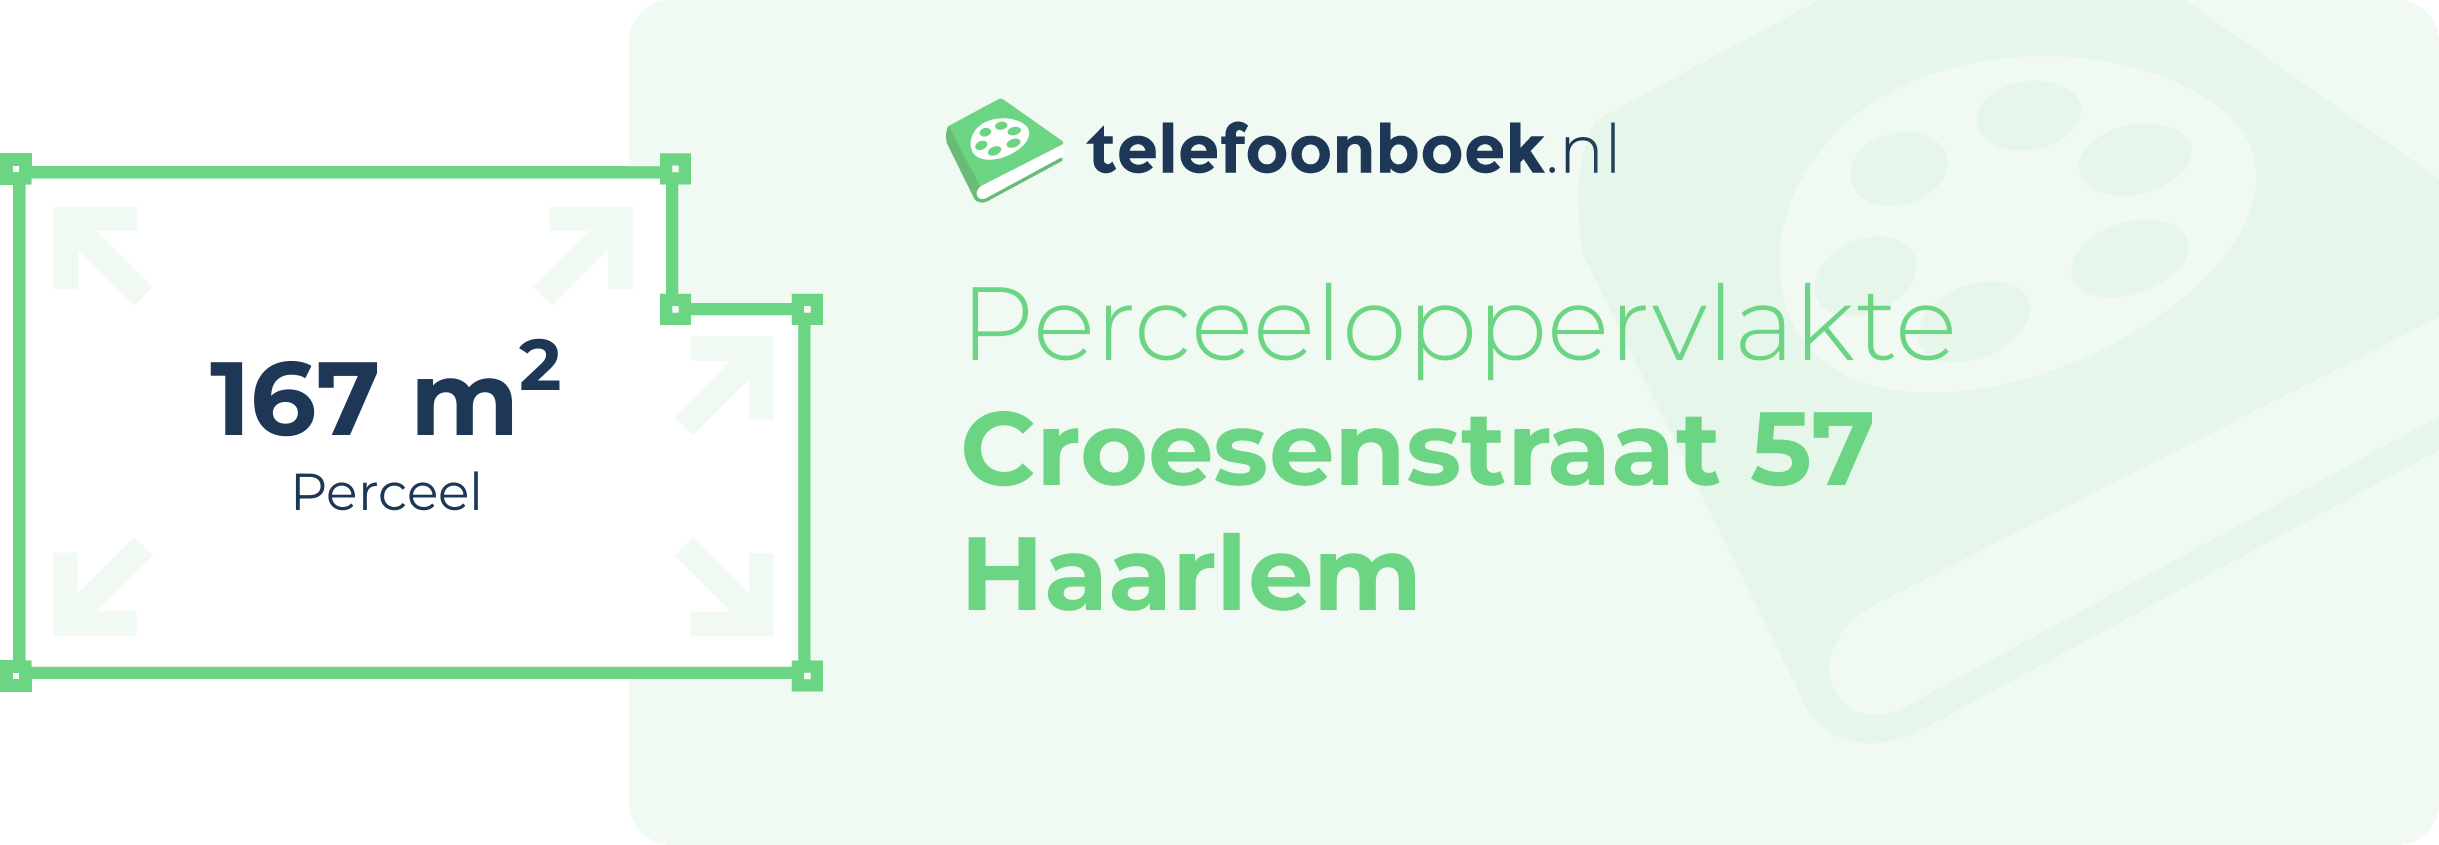 Perceeloppervlakte Croesenstraat 57 Haarlem